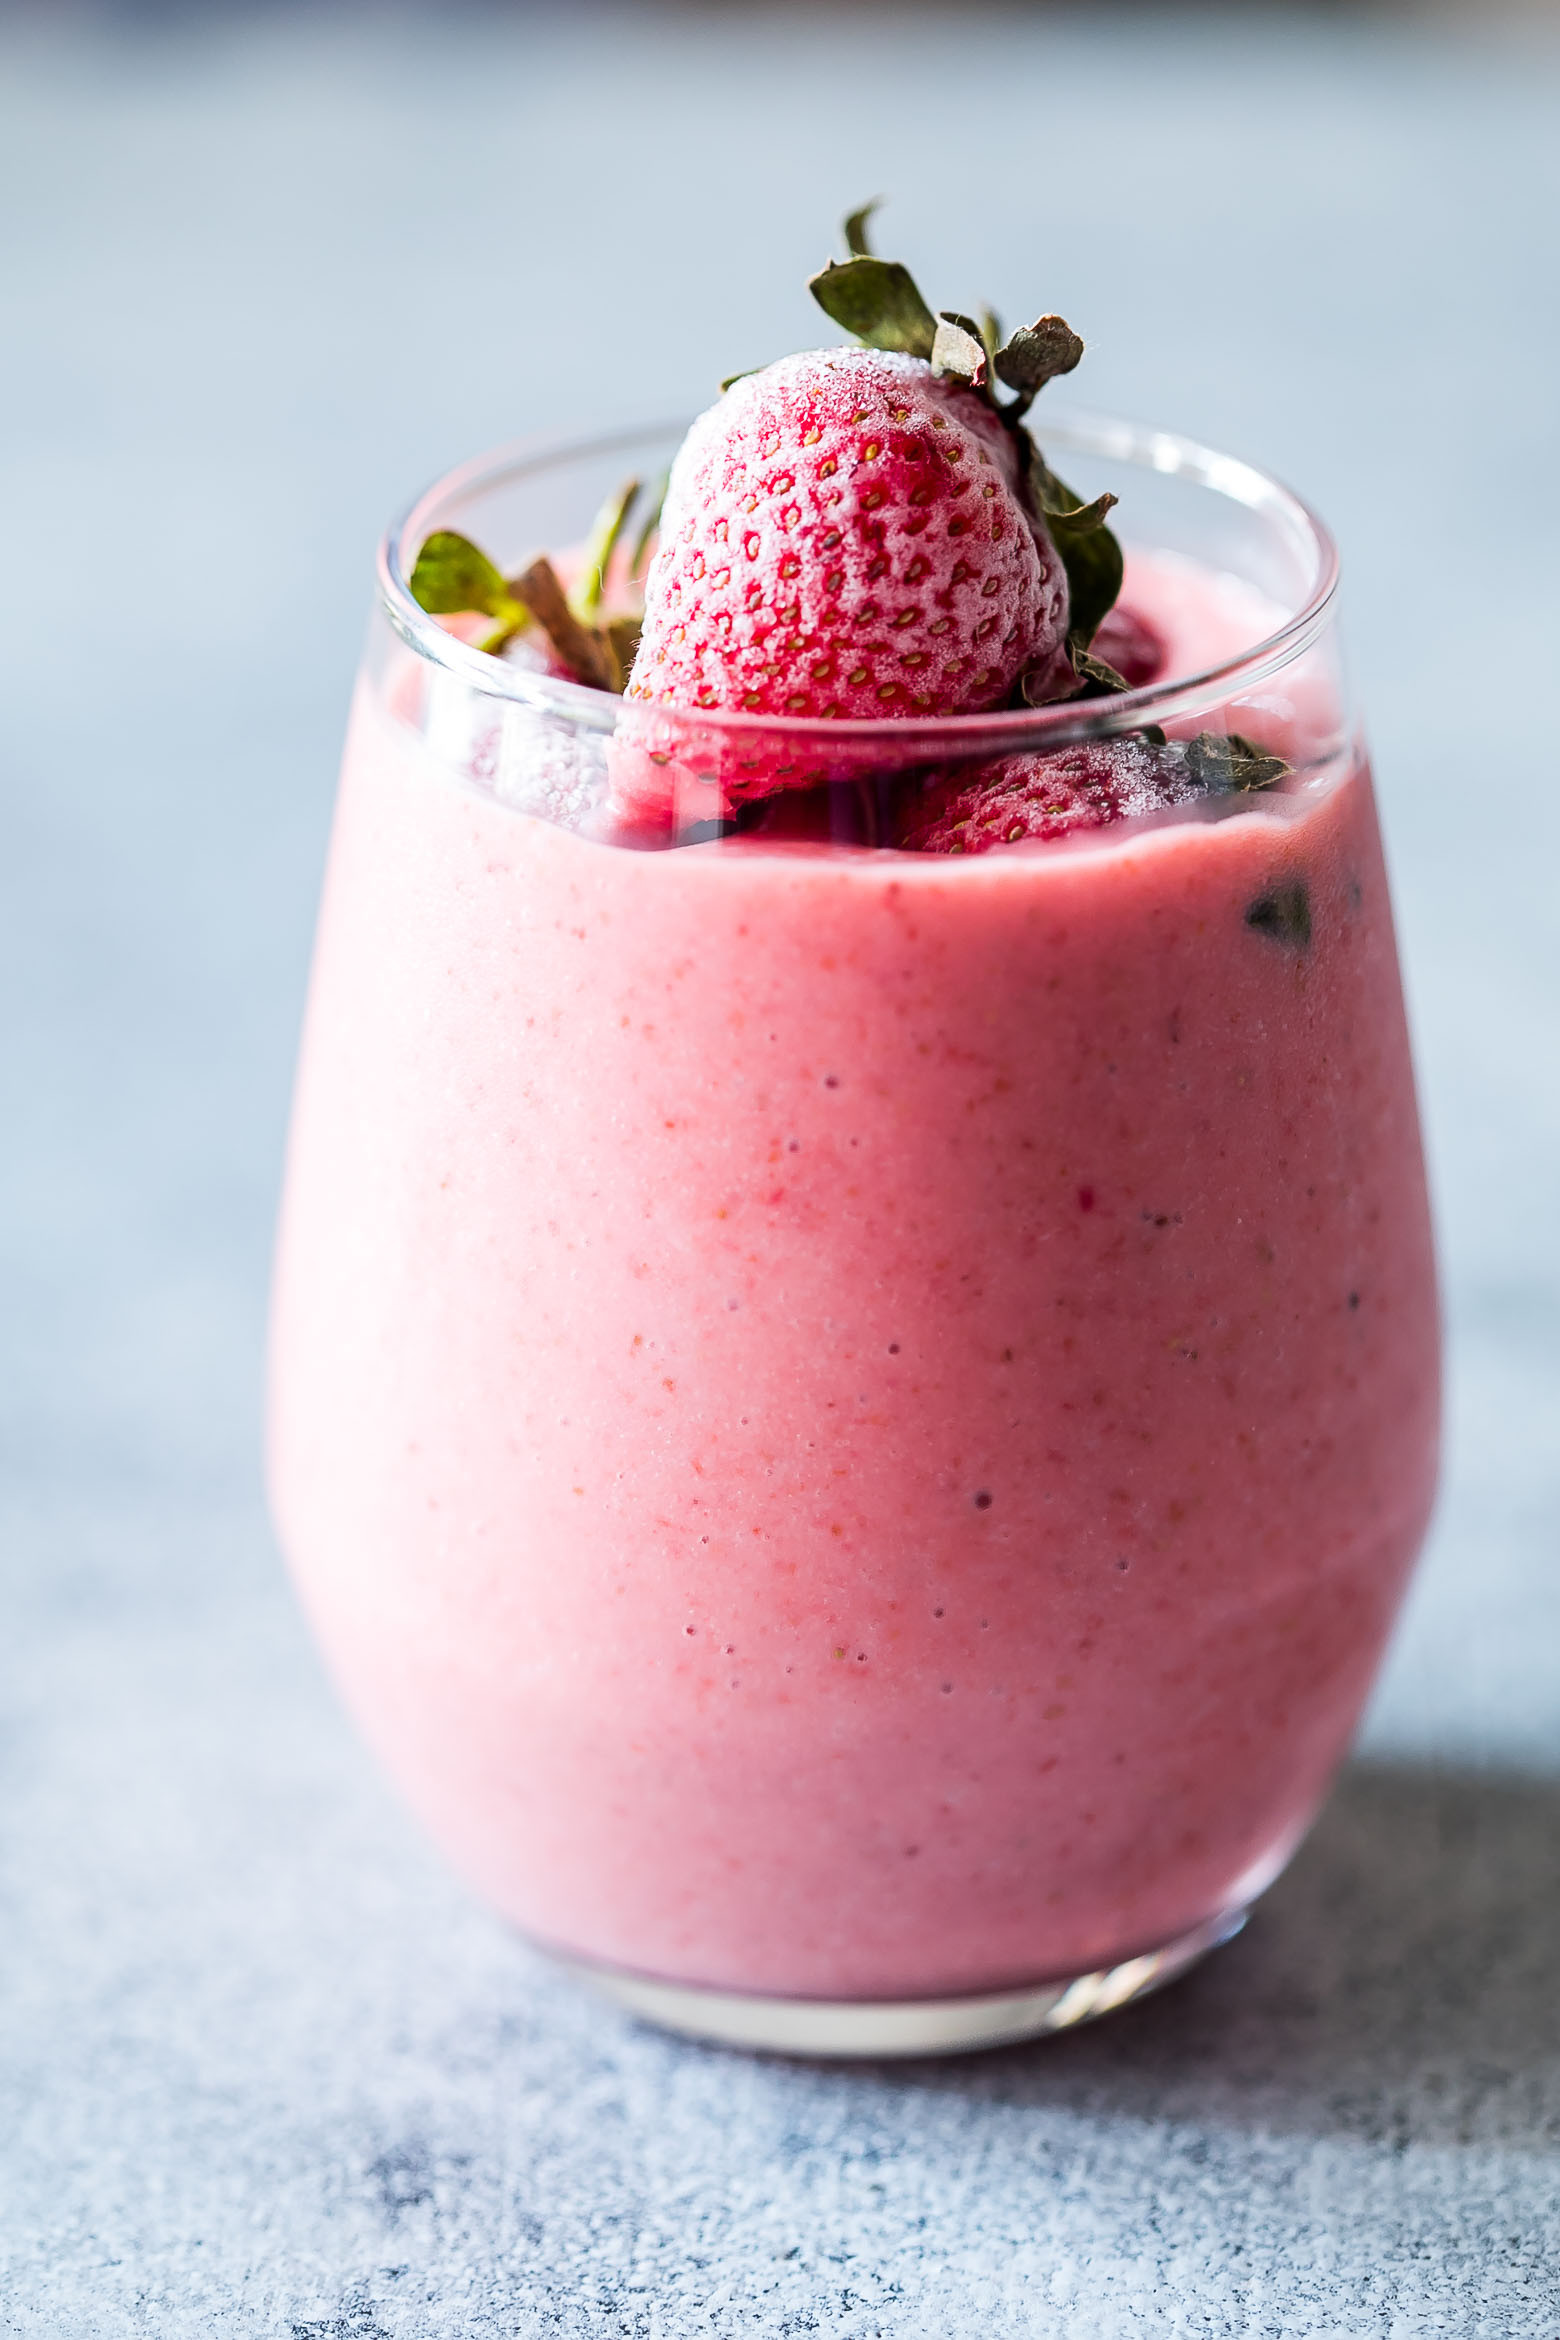 Yogurt Smoothie Recipes With Frozen Fruit
 Frozen Strawberry Greek Yogurt Smoothie 10 minute Breakfast